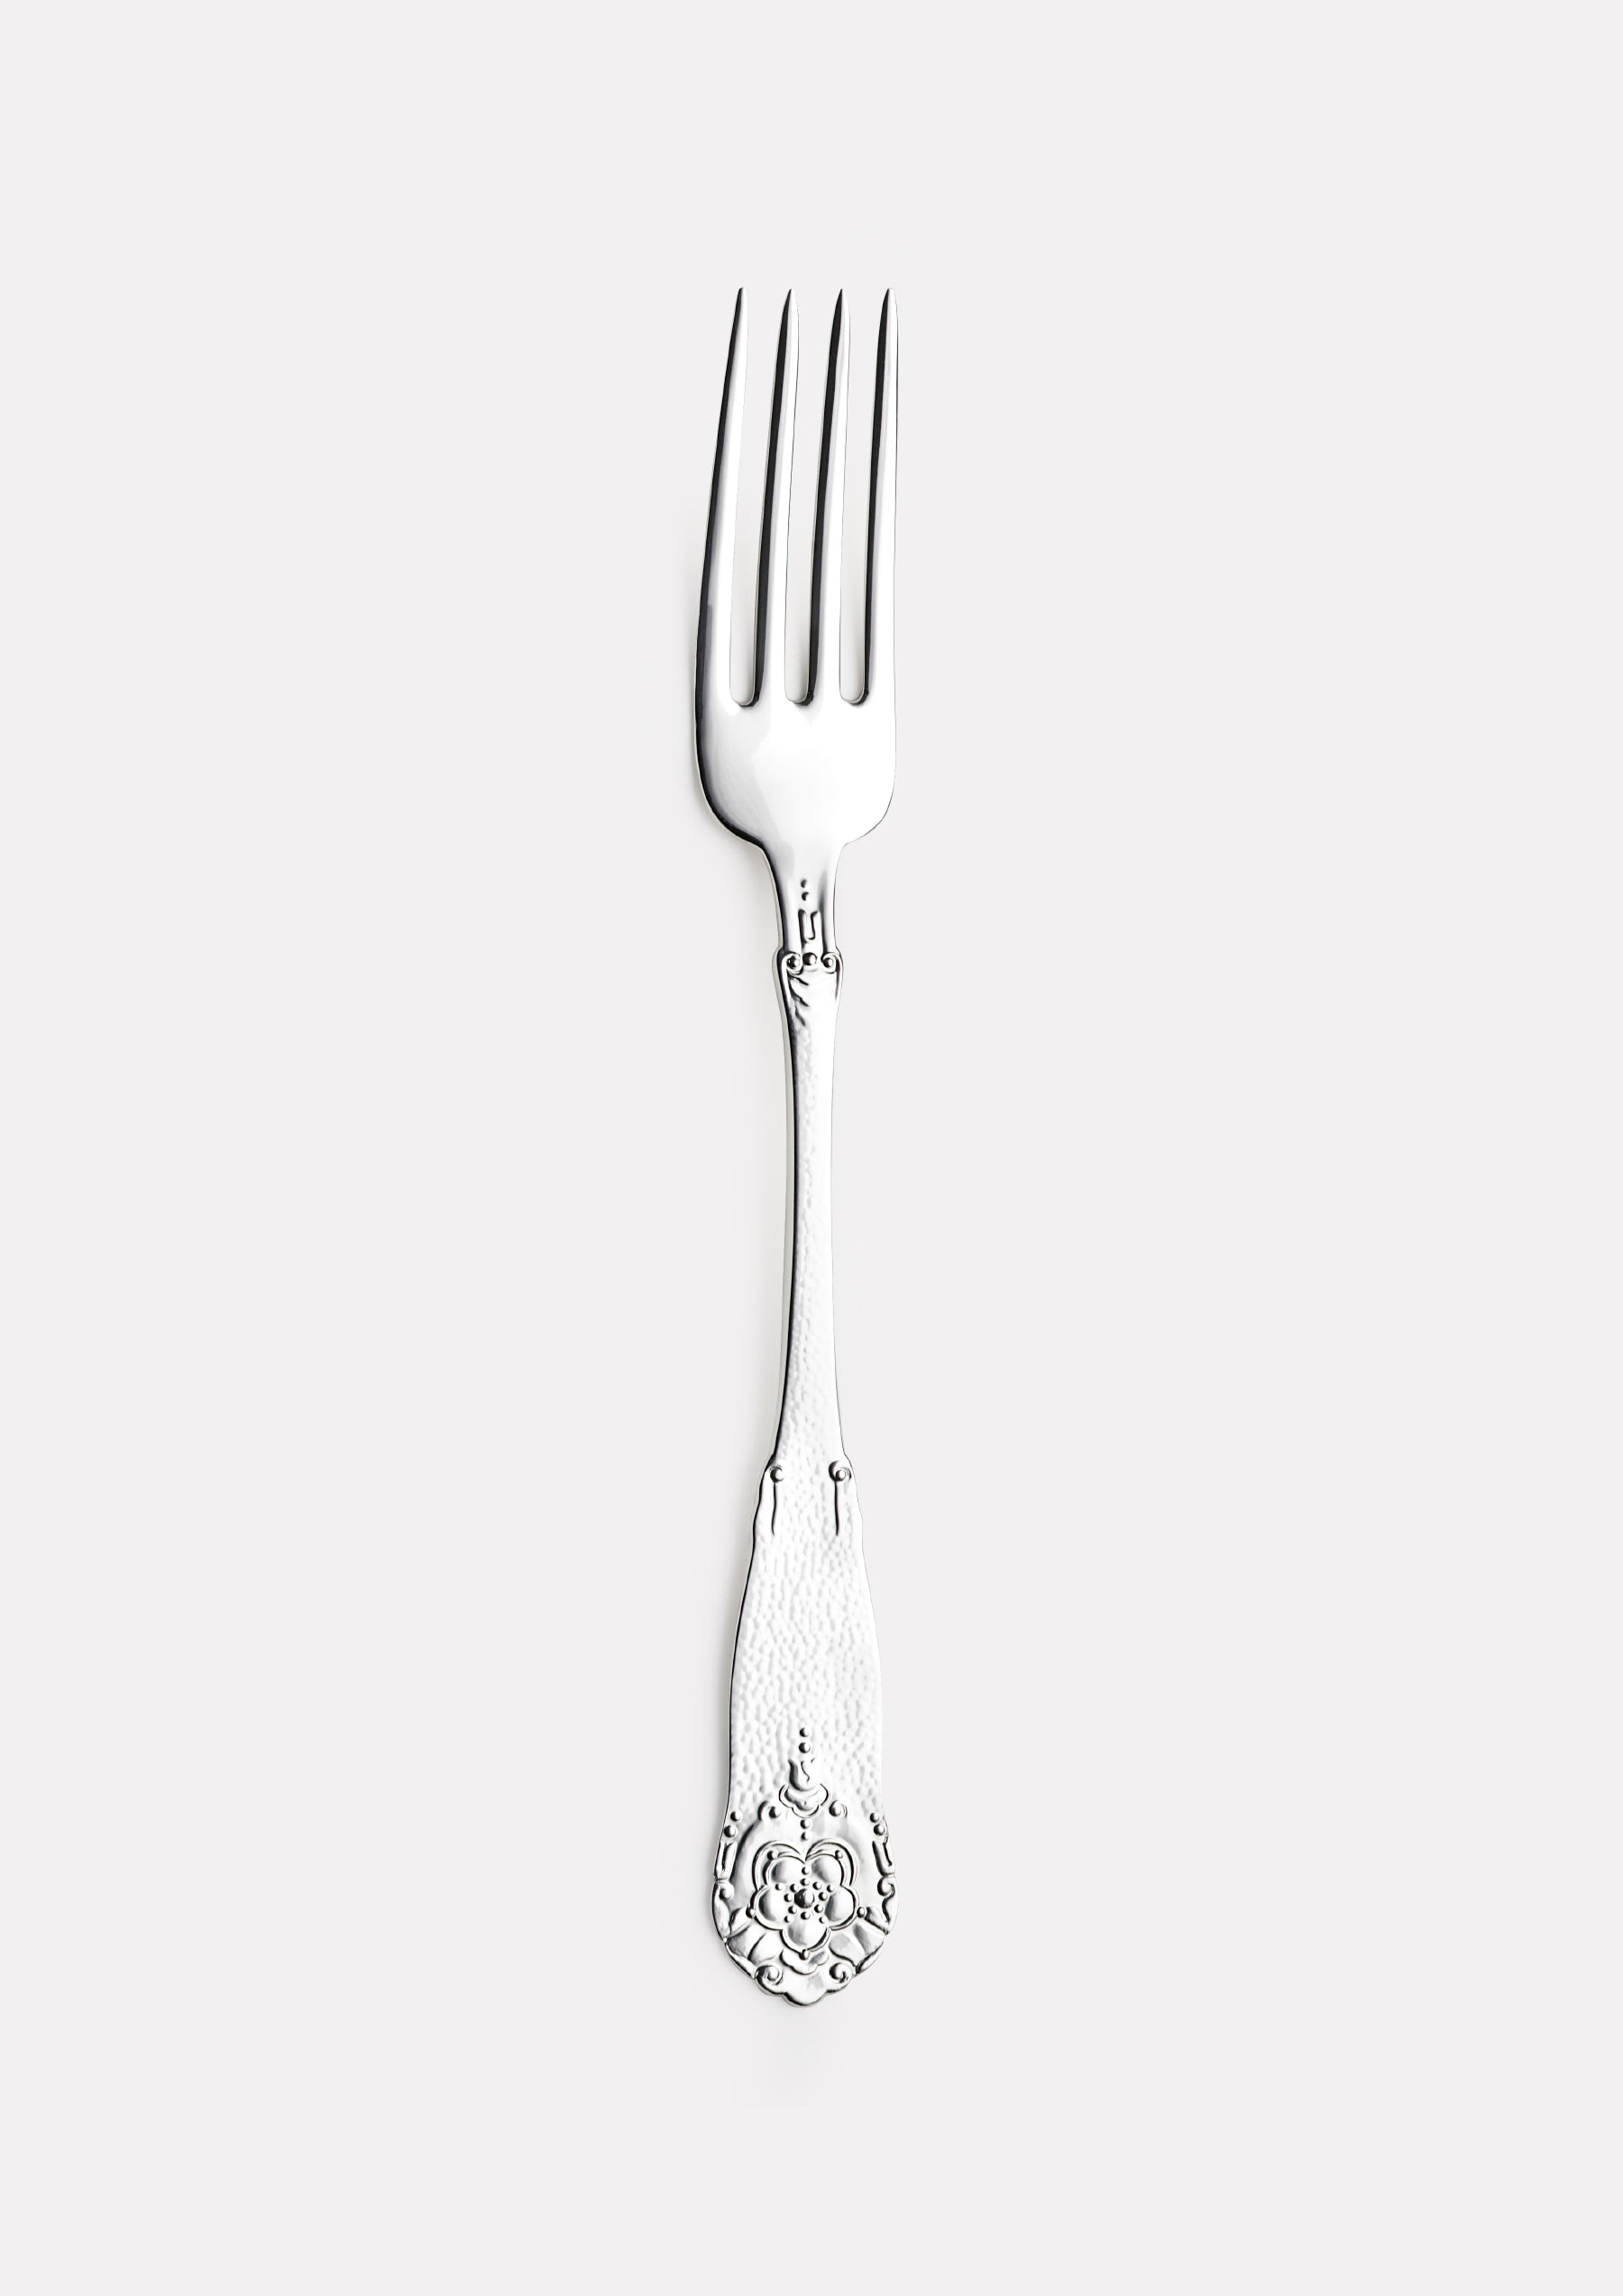 Hardanger large dinner fork